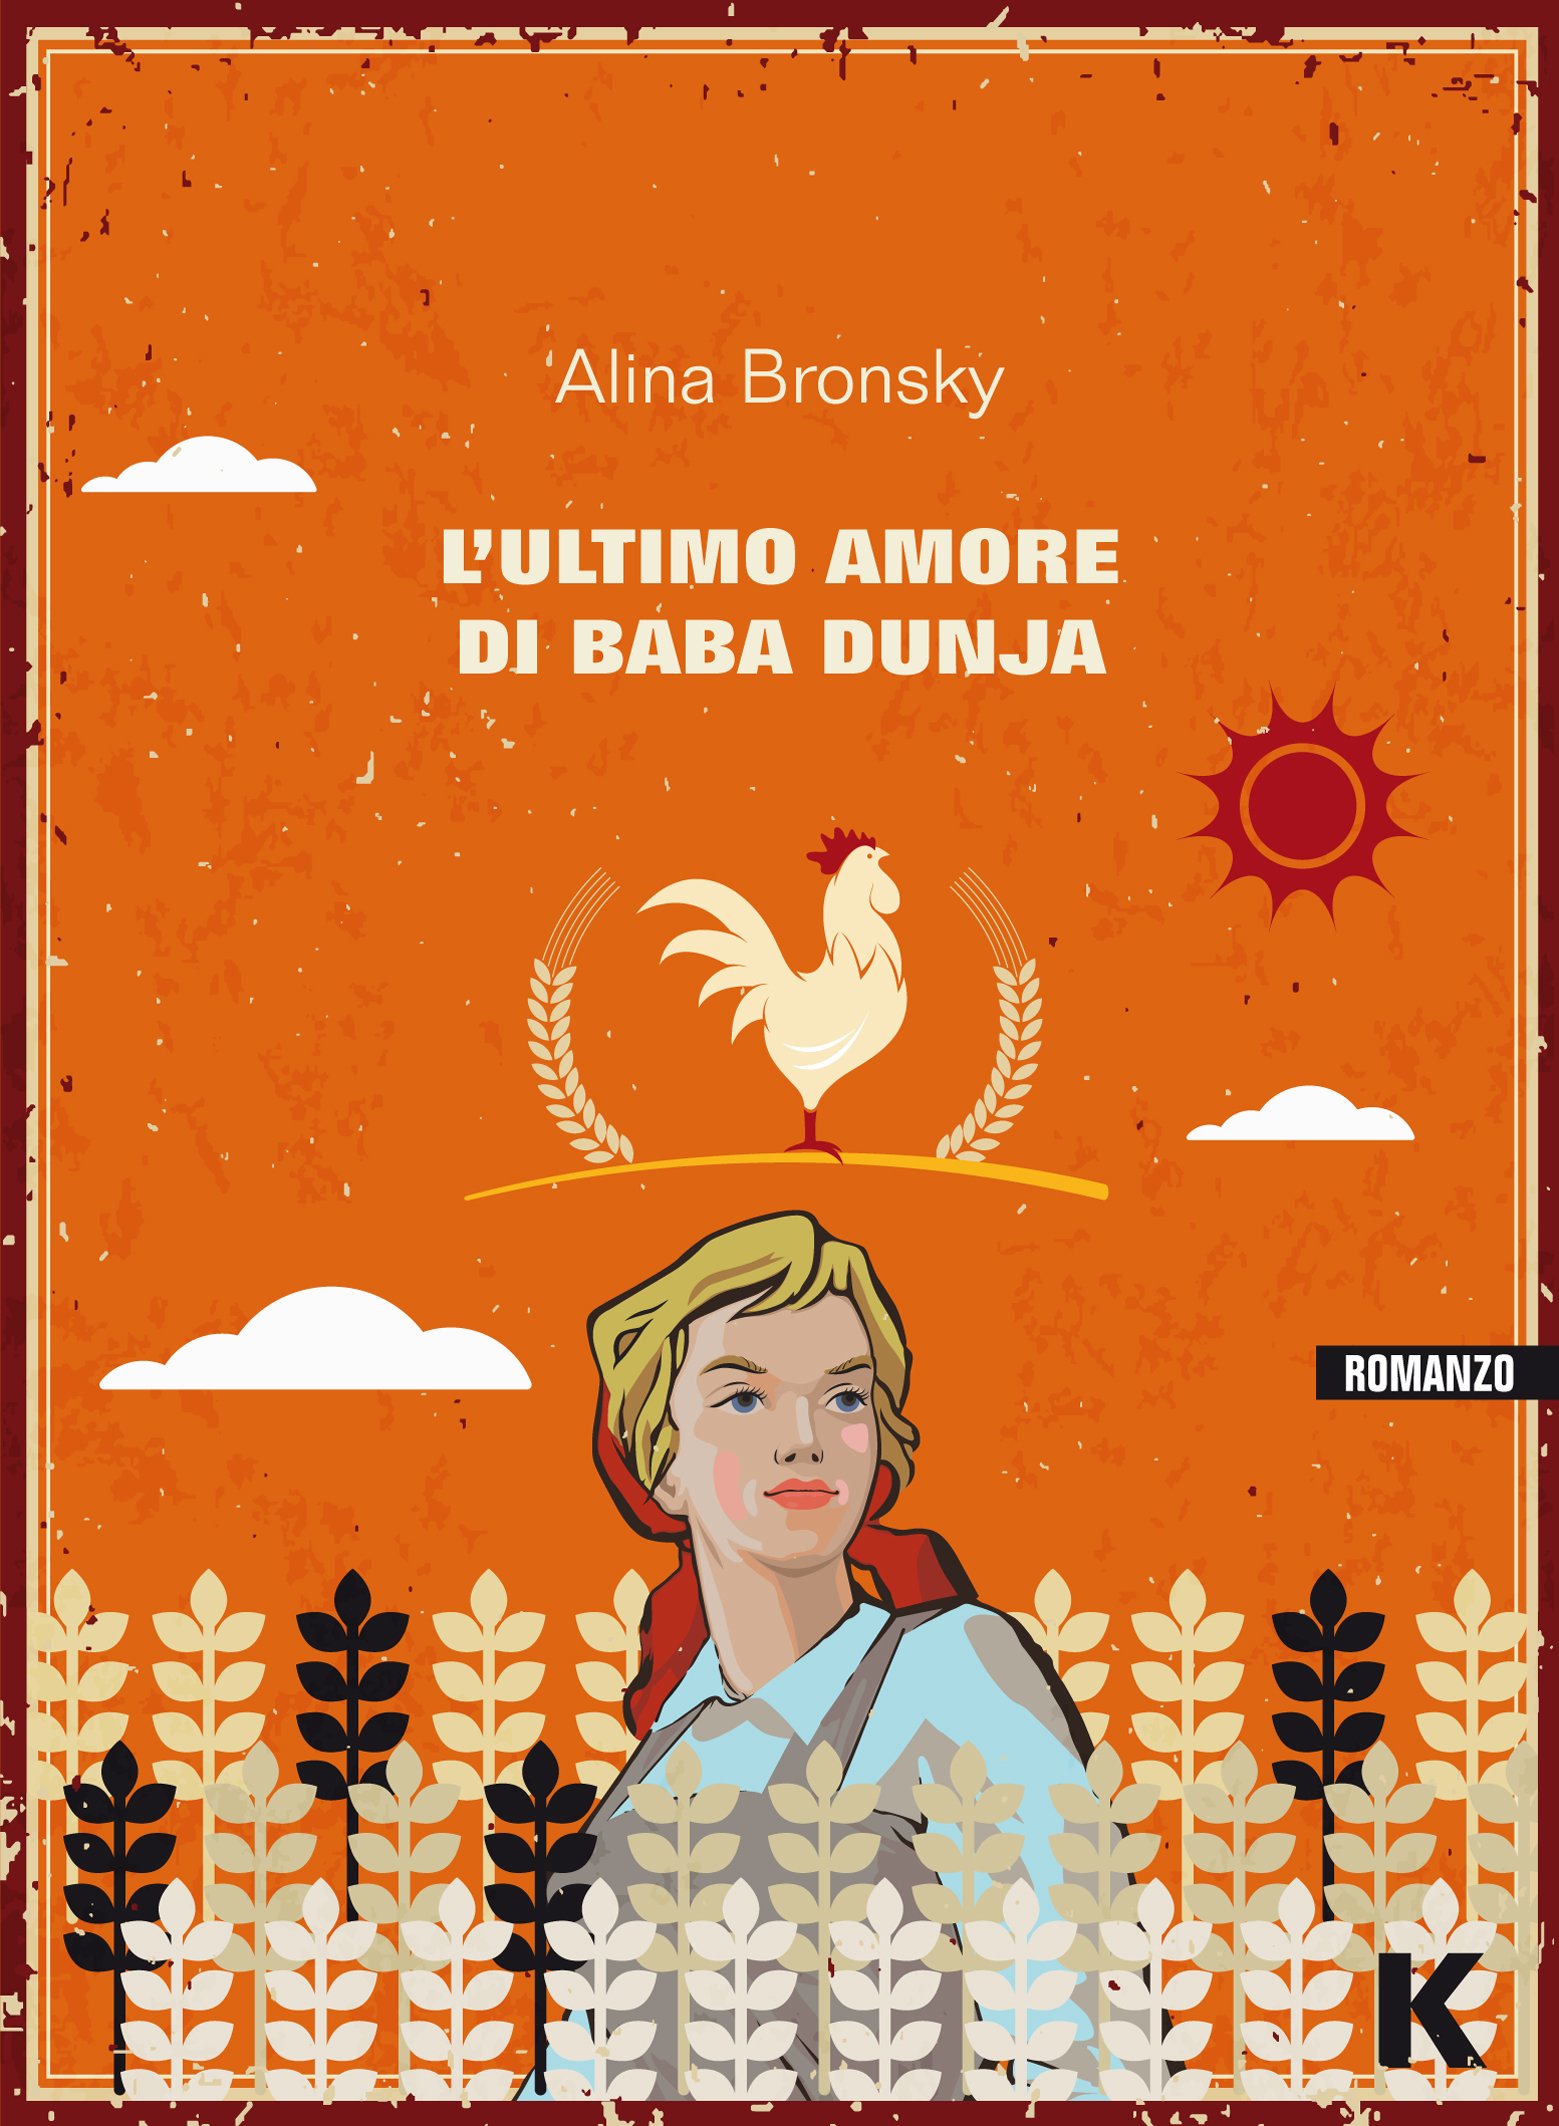 Alina Bronsky: L'ultimo amore di Baba Dunja (Paperback, Italiano language, 2016, Keller)